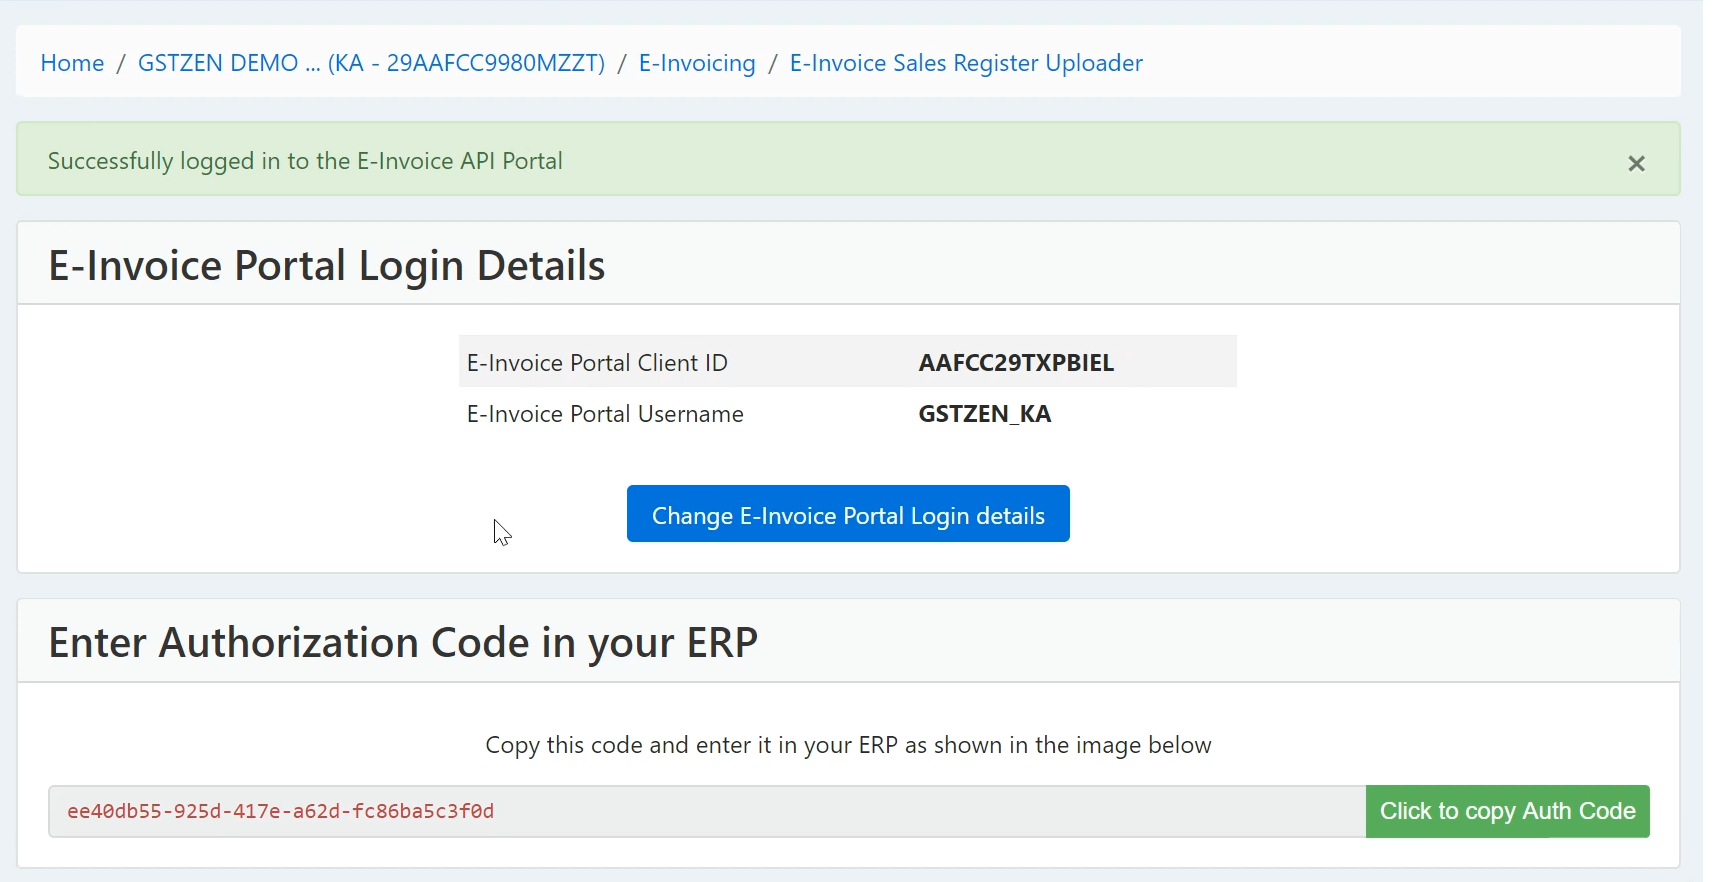 Logged into e-Invoicing API Portal